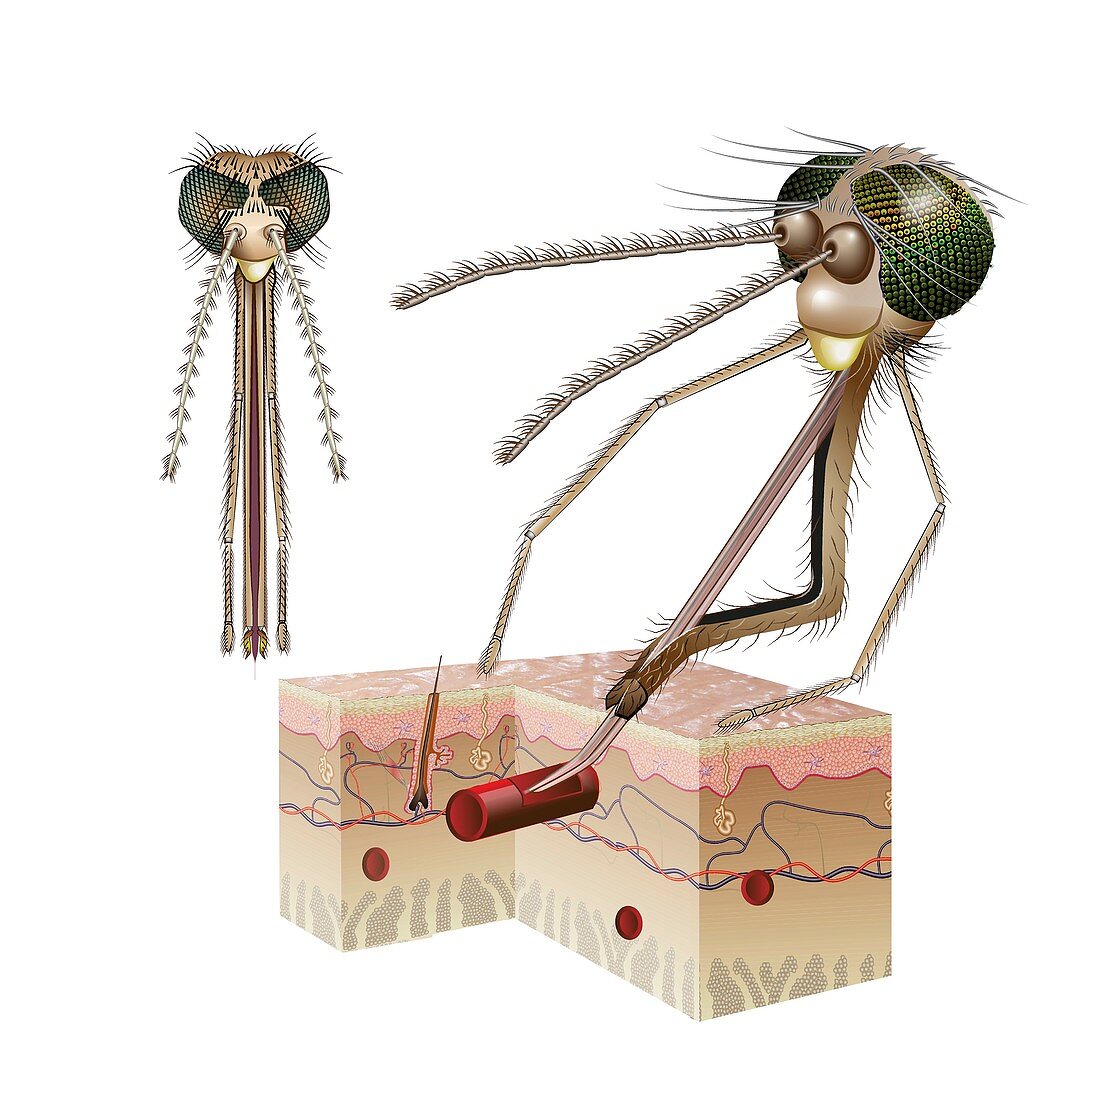 Female Anopheles mosquito feeding on blood, illustration